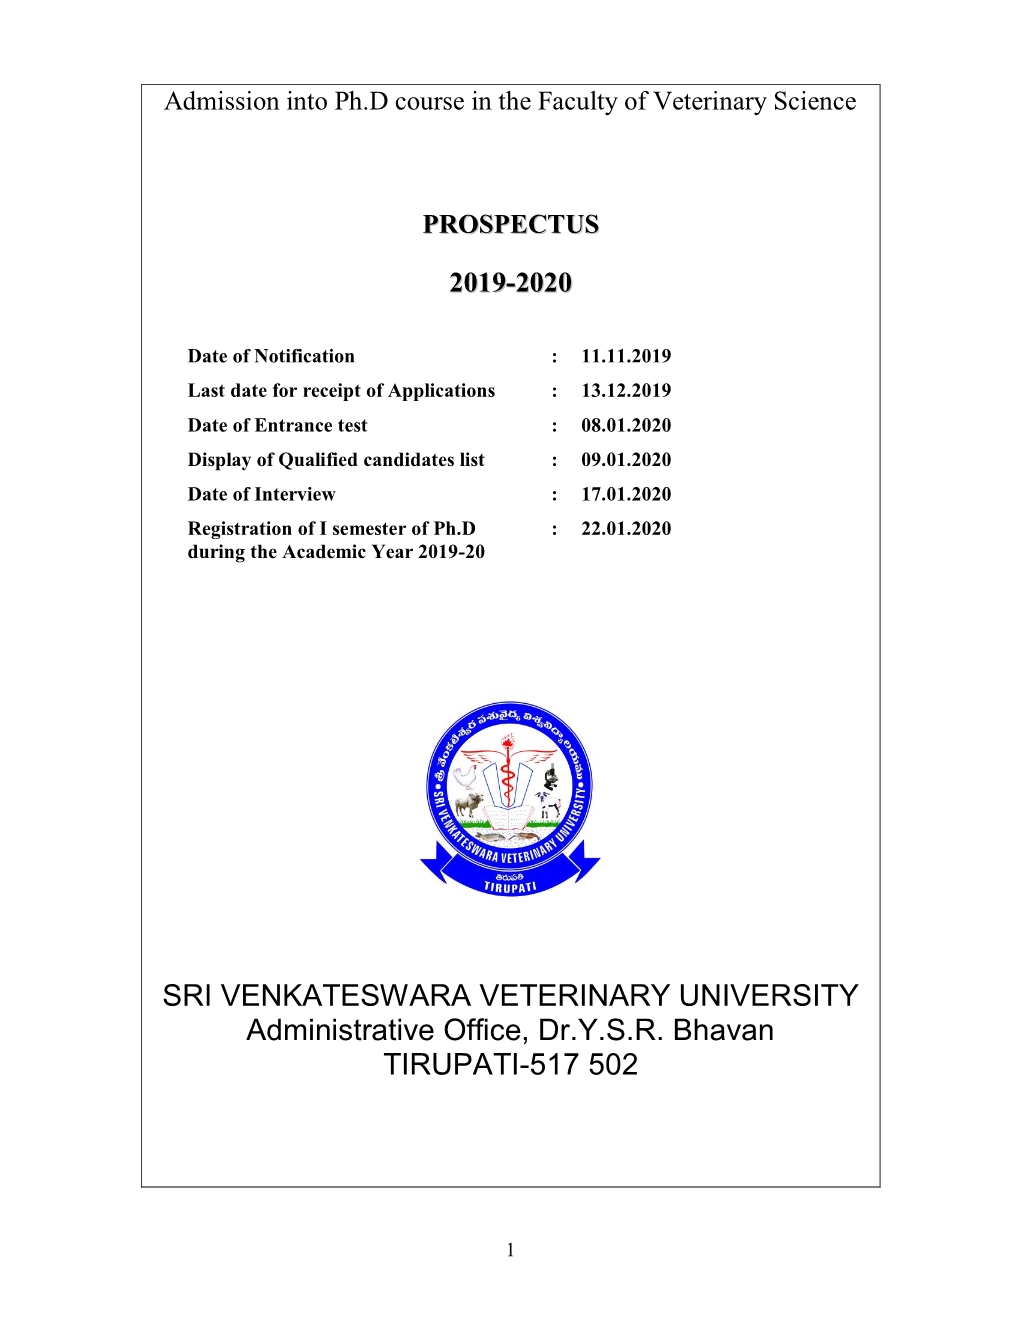 SRI VENKATESWARA VETERINARY UNIVERSITY Administrative Office, Dr.Y.S.R